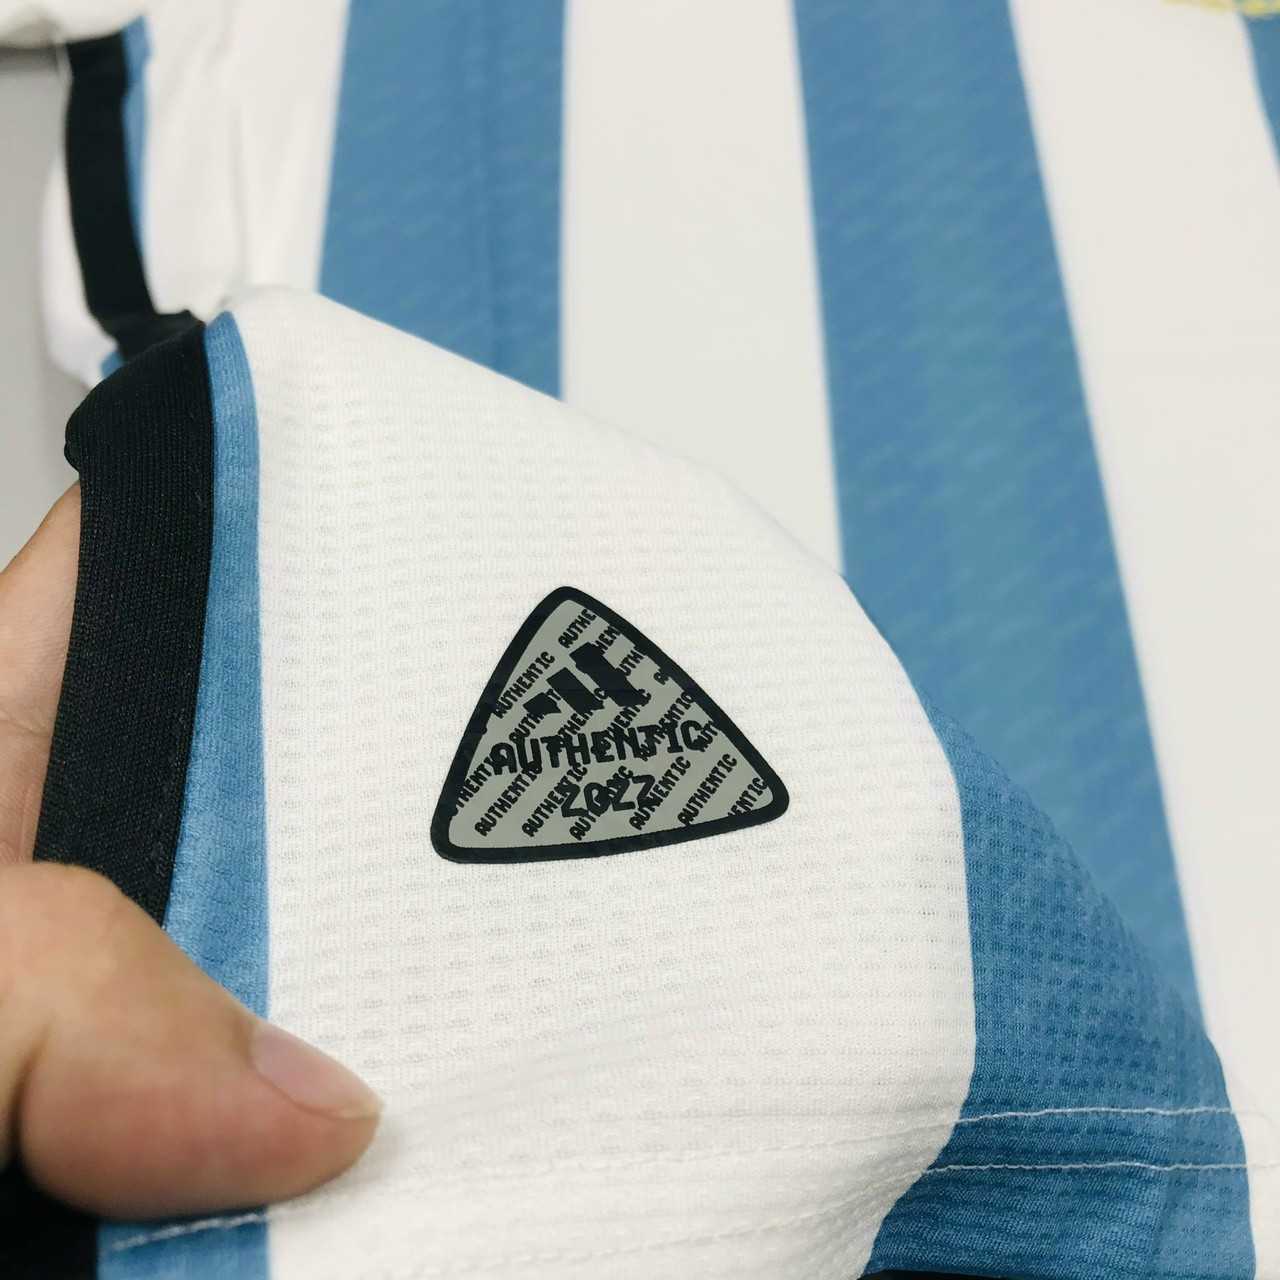 Bộ quần áo đá banh đội tuyển bóng đá Argentina 3 sao jersey sân nhà vô địch world cup 2022 2